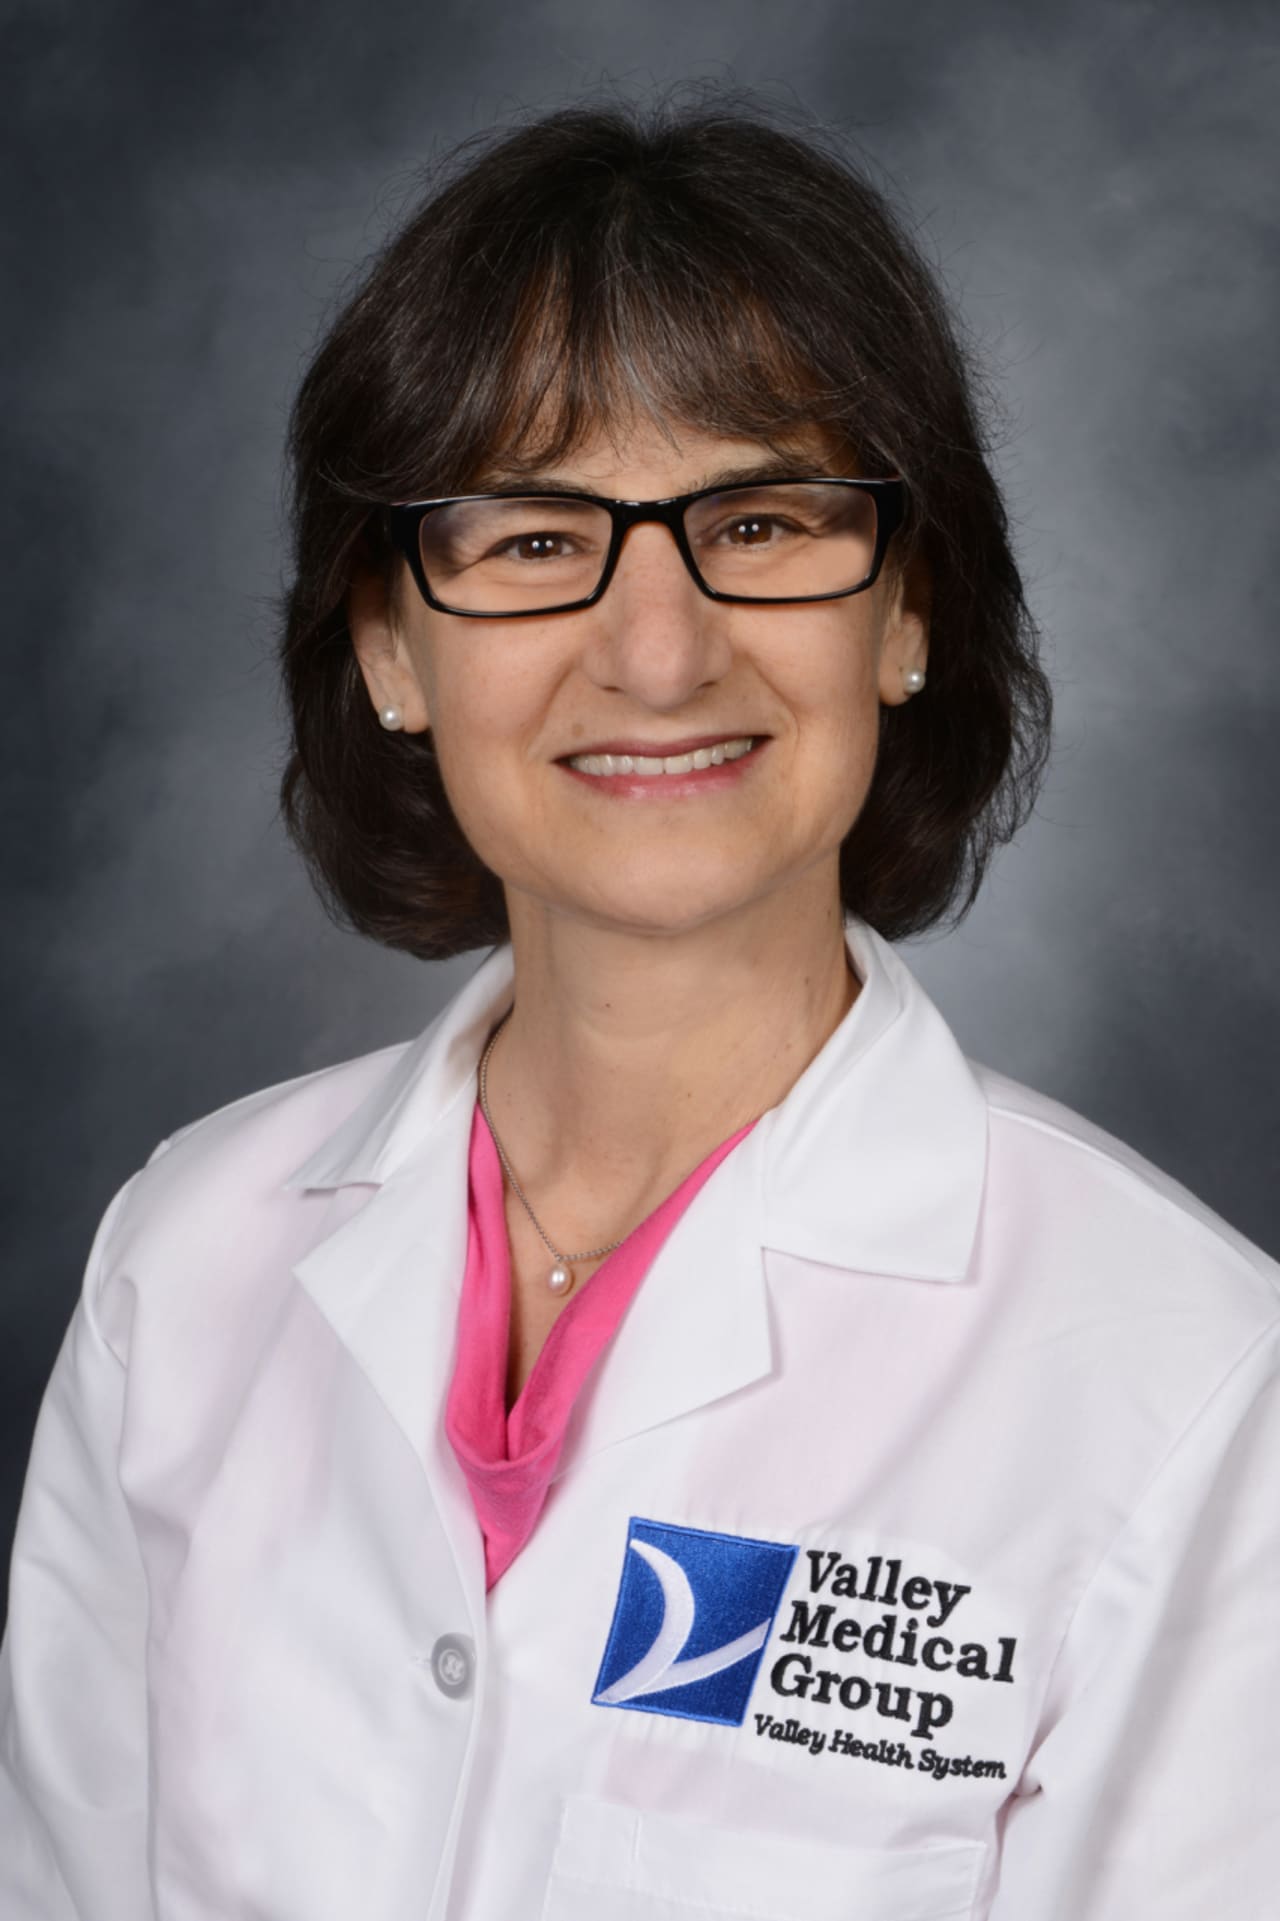 Dr. Jodie Katz of Valley Medical Group’s Center for Integrative Medicine.